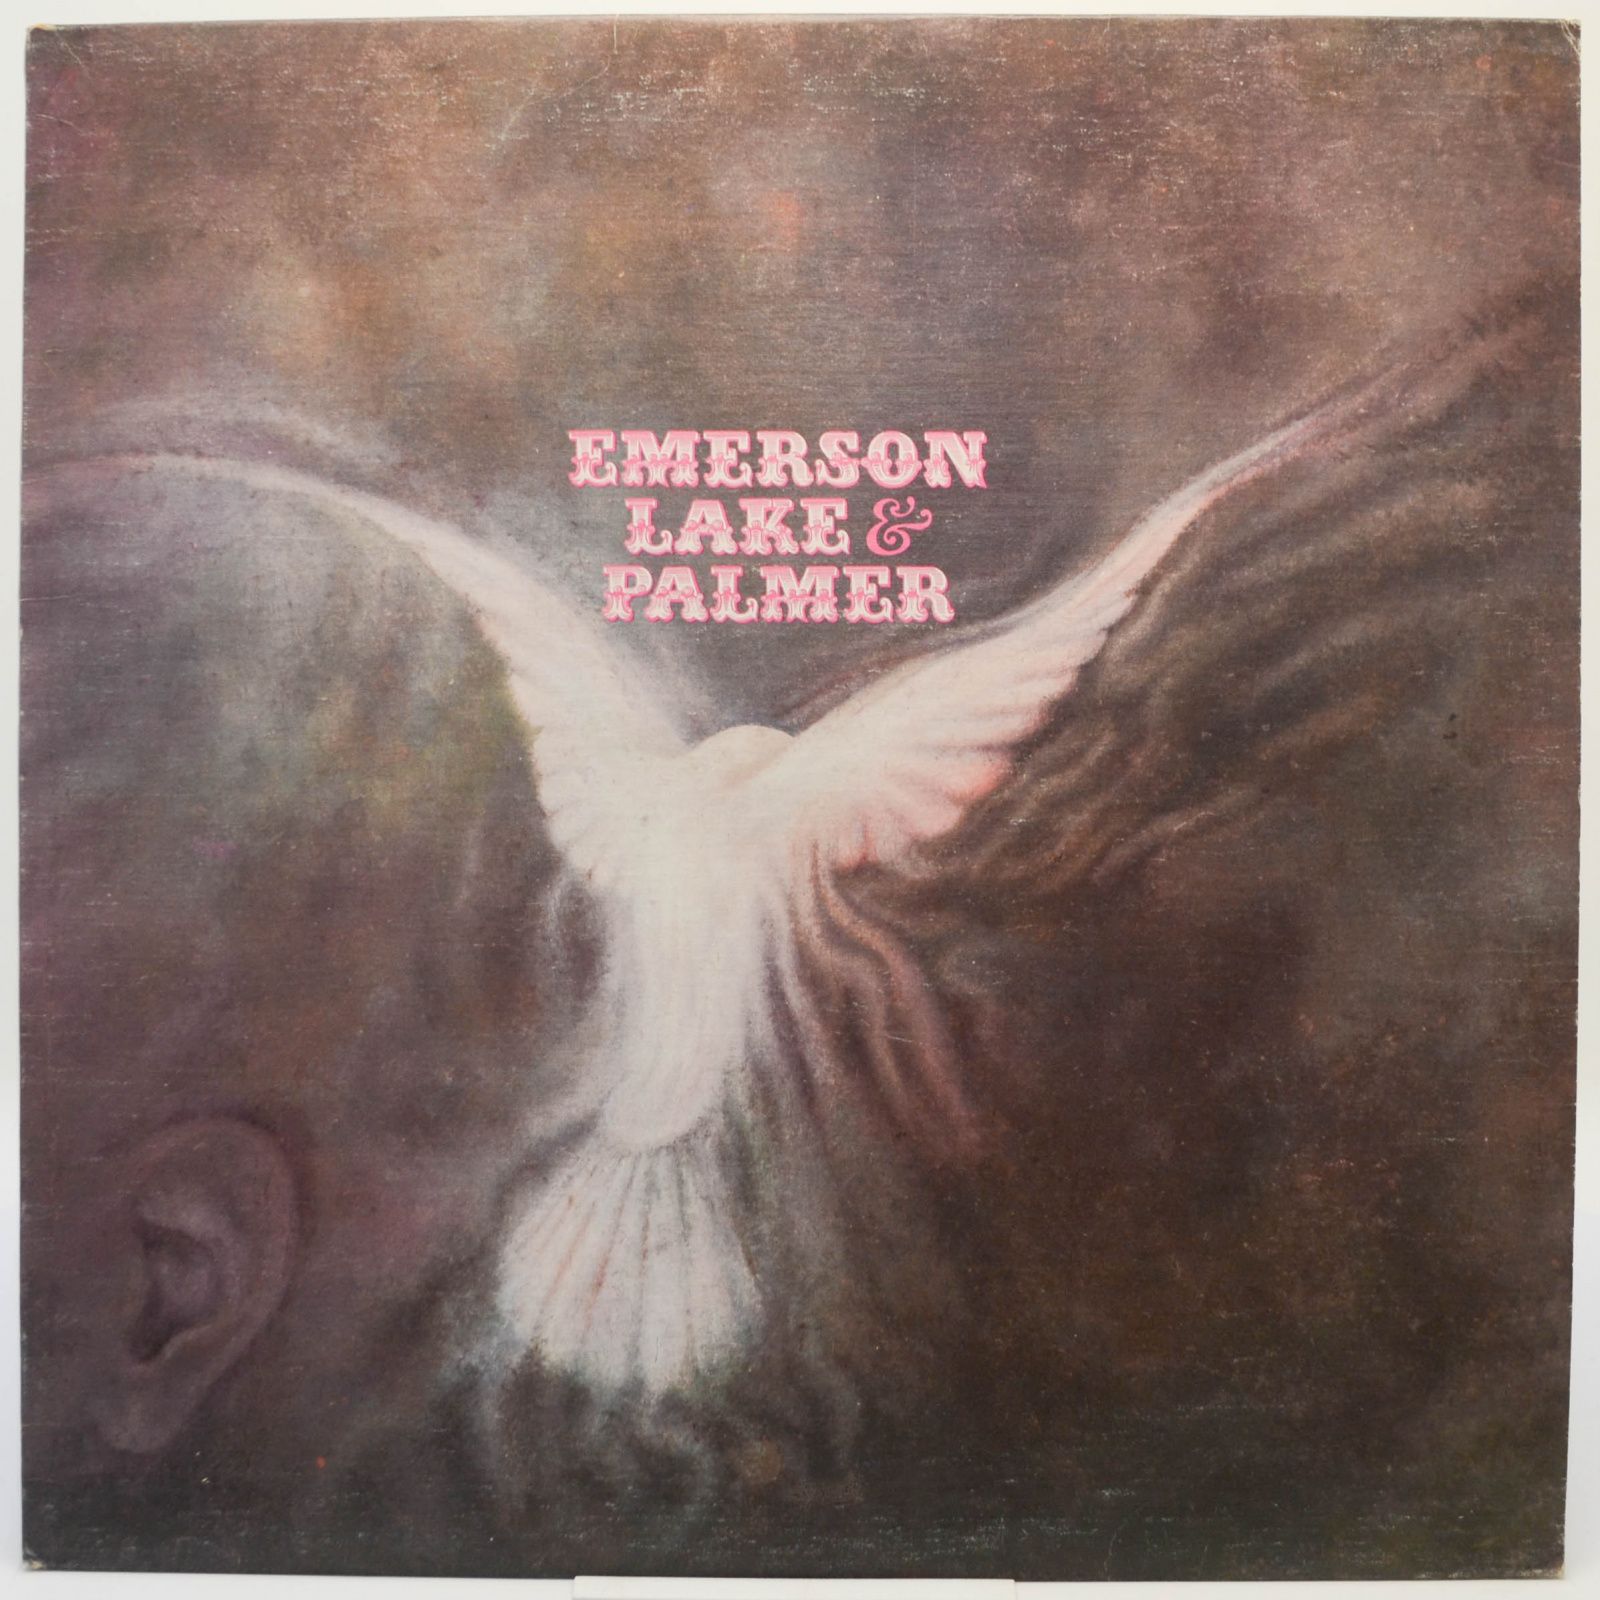 Emerson, Lake & Palmer — Emerson, Lake & Palmer, 1977